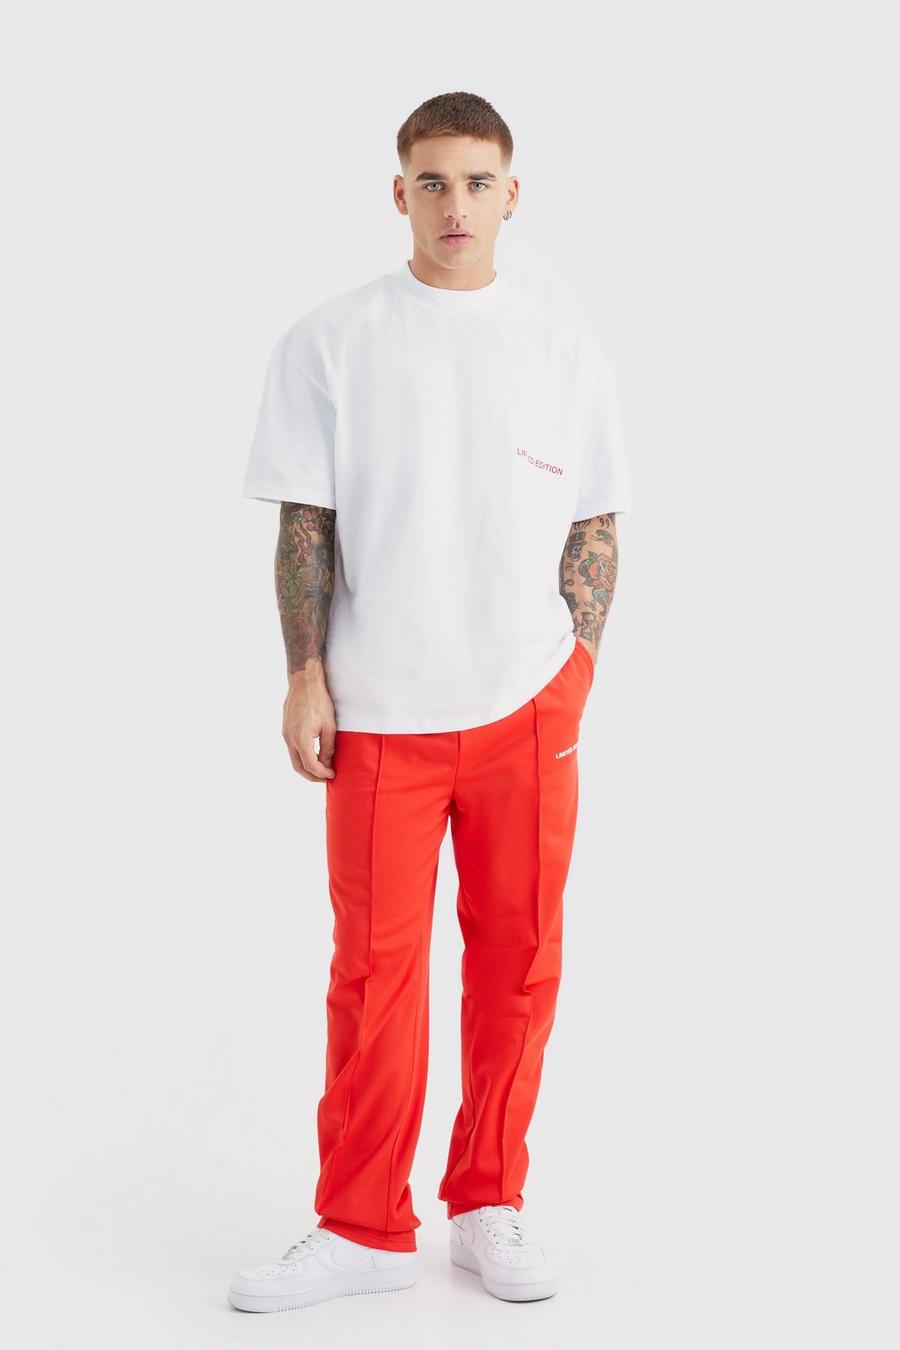 Ensemble oversize avec t-shirt et jogging - Limited Edition, Red